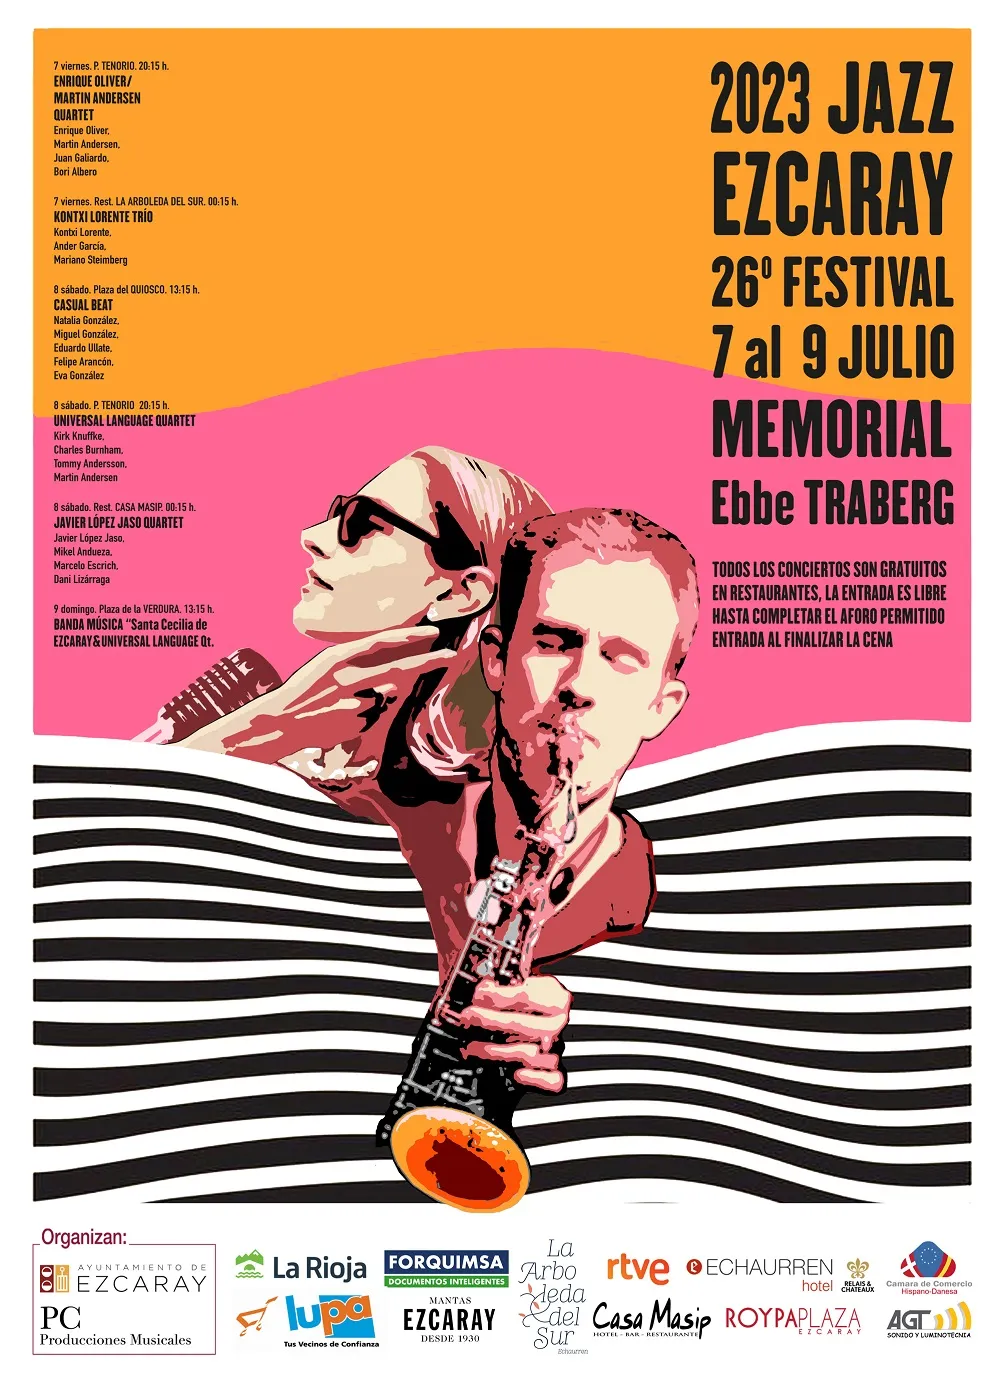 jazzdeezcaray festival 2023 oficial cartel